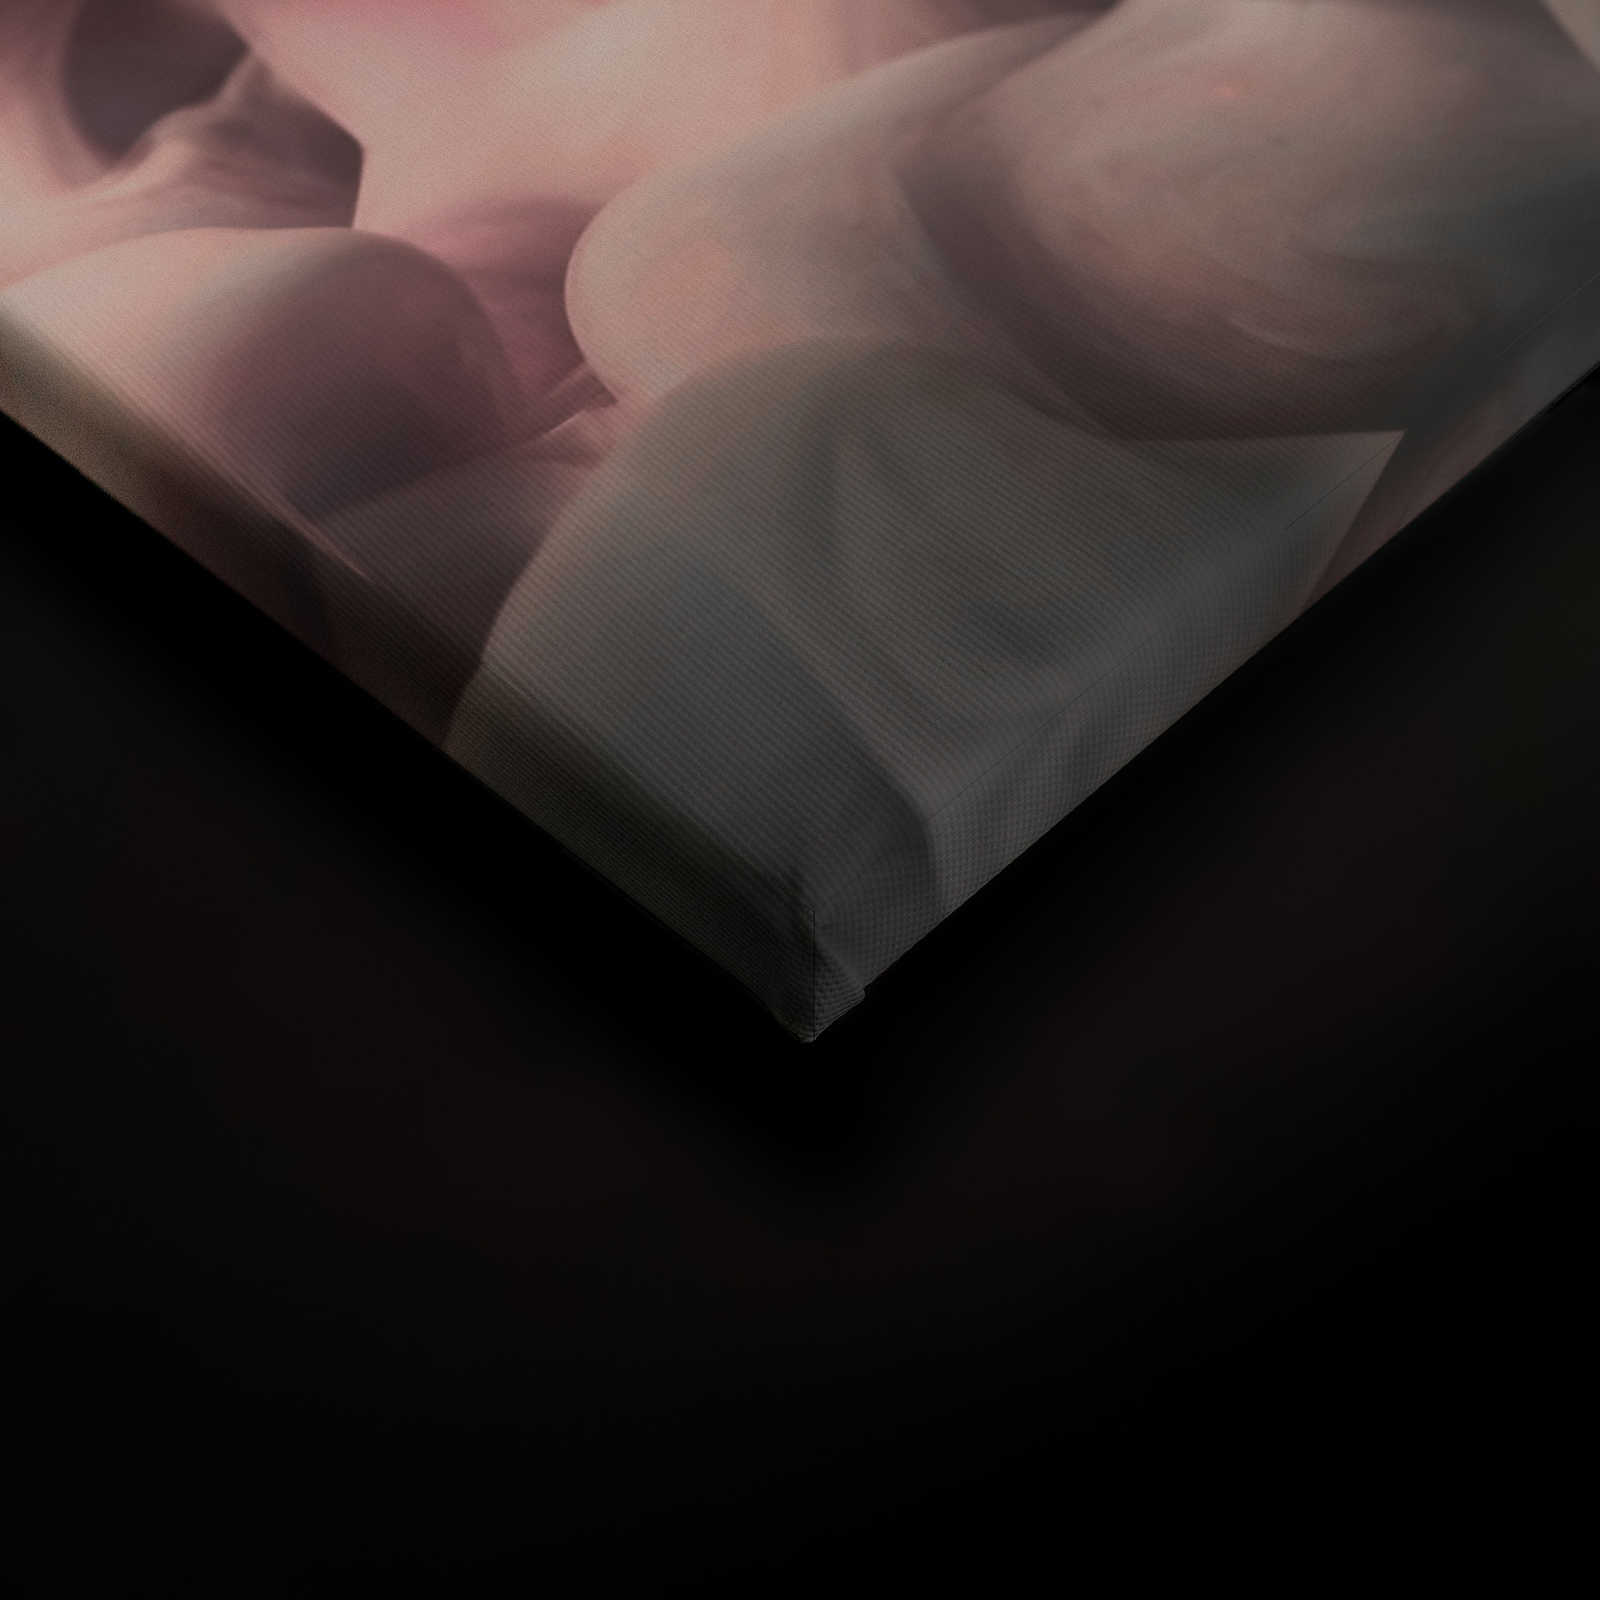             Toile fumée colorée | rose, gris, blanc - 0,90 m x 0,60 m
        